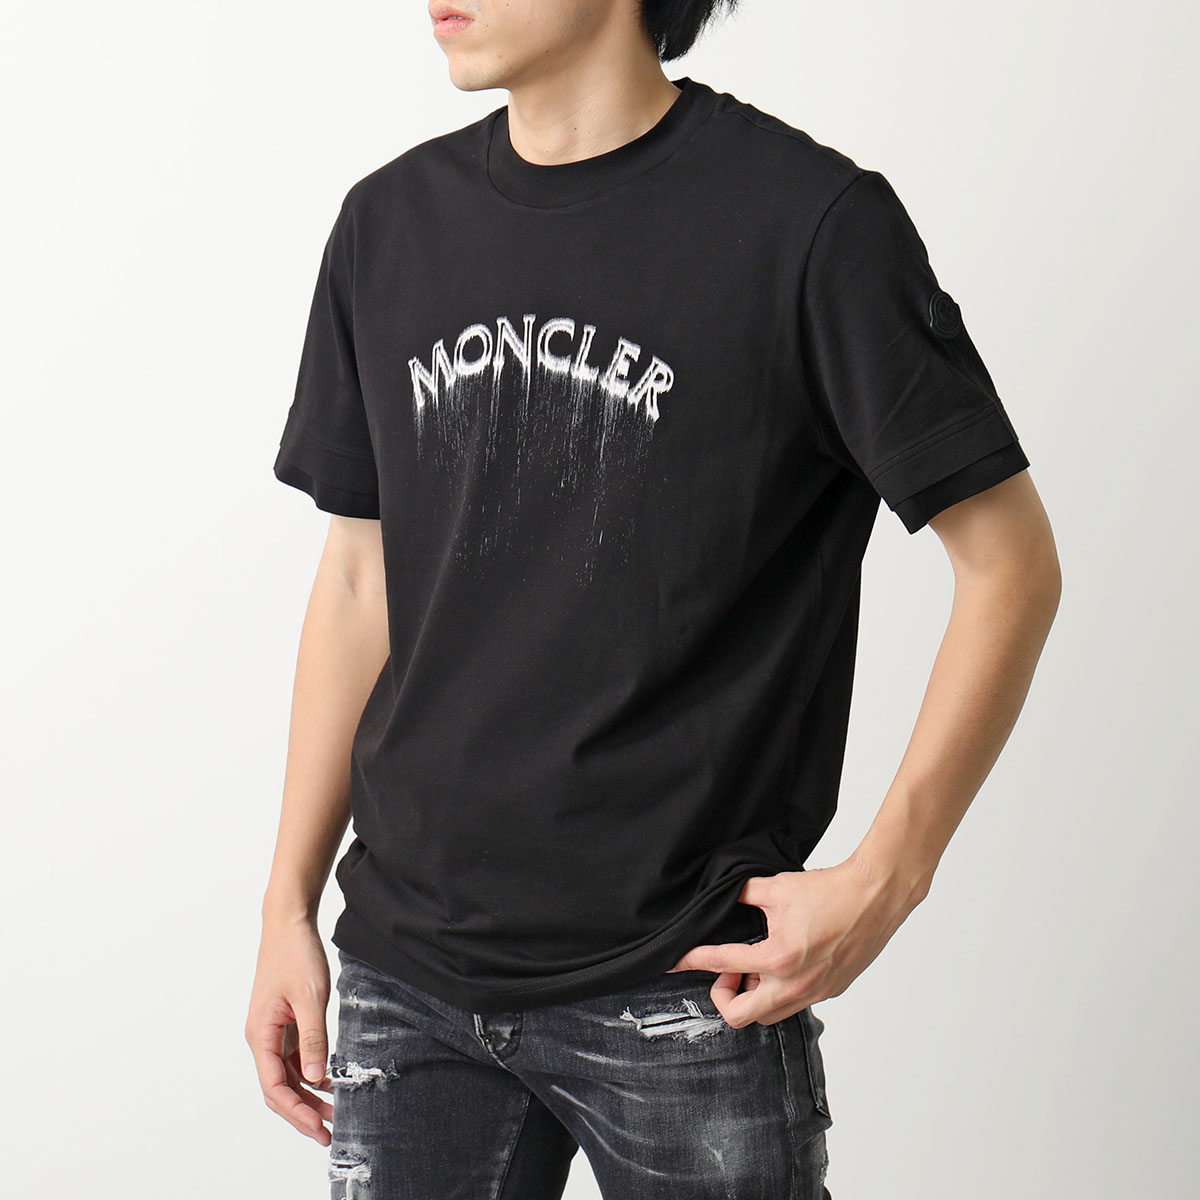 MONCLER モンクレール Tシャツ 8C00002 89A17 メンズ クルーネック 半袖 カットソー ロゴT アイコンパッチ カラー2色